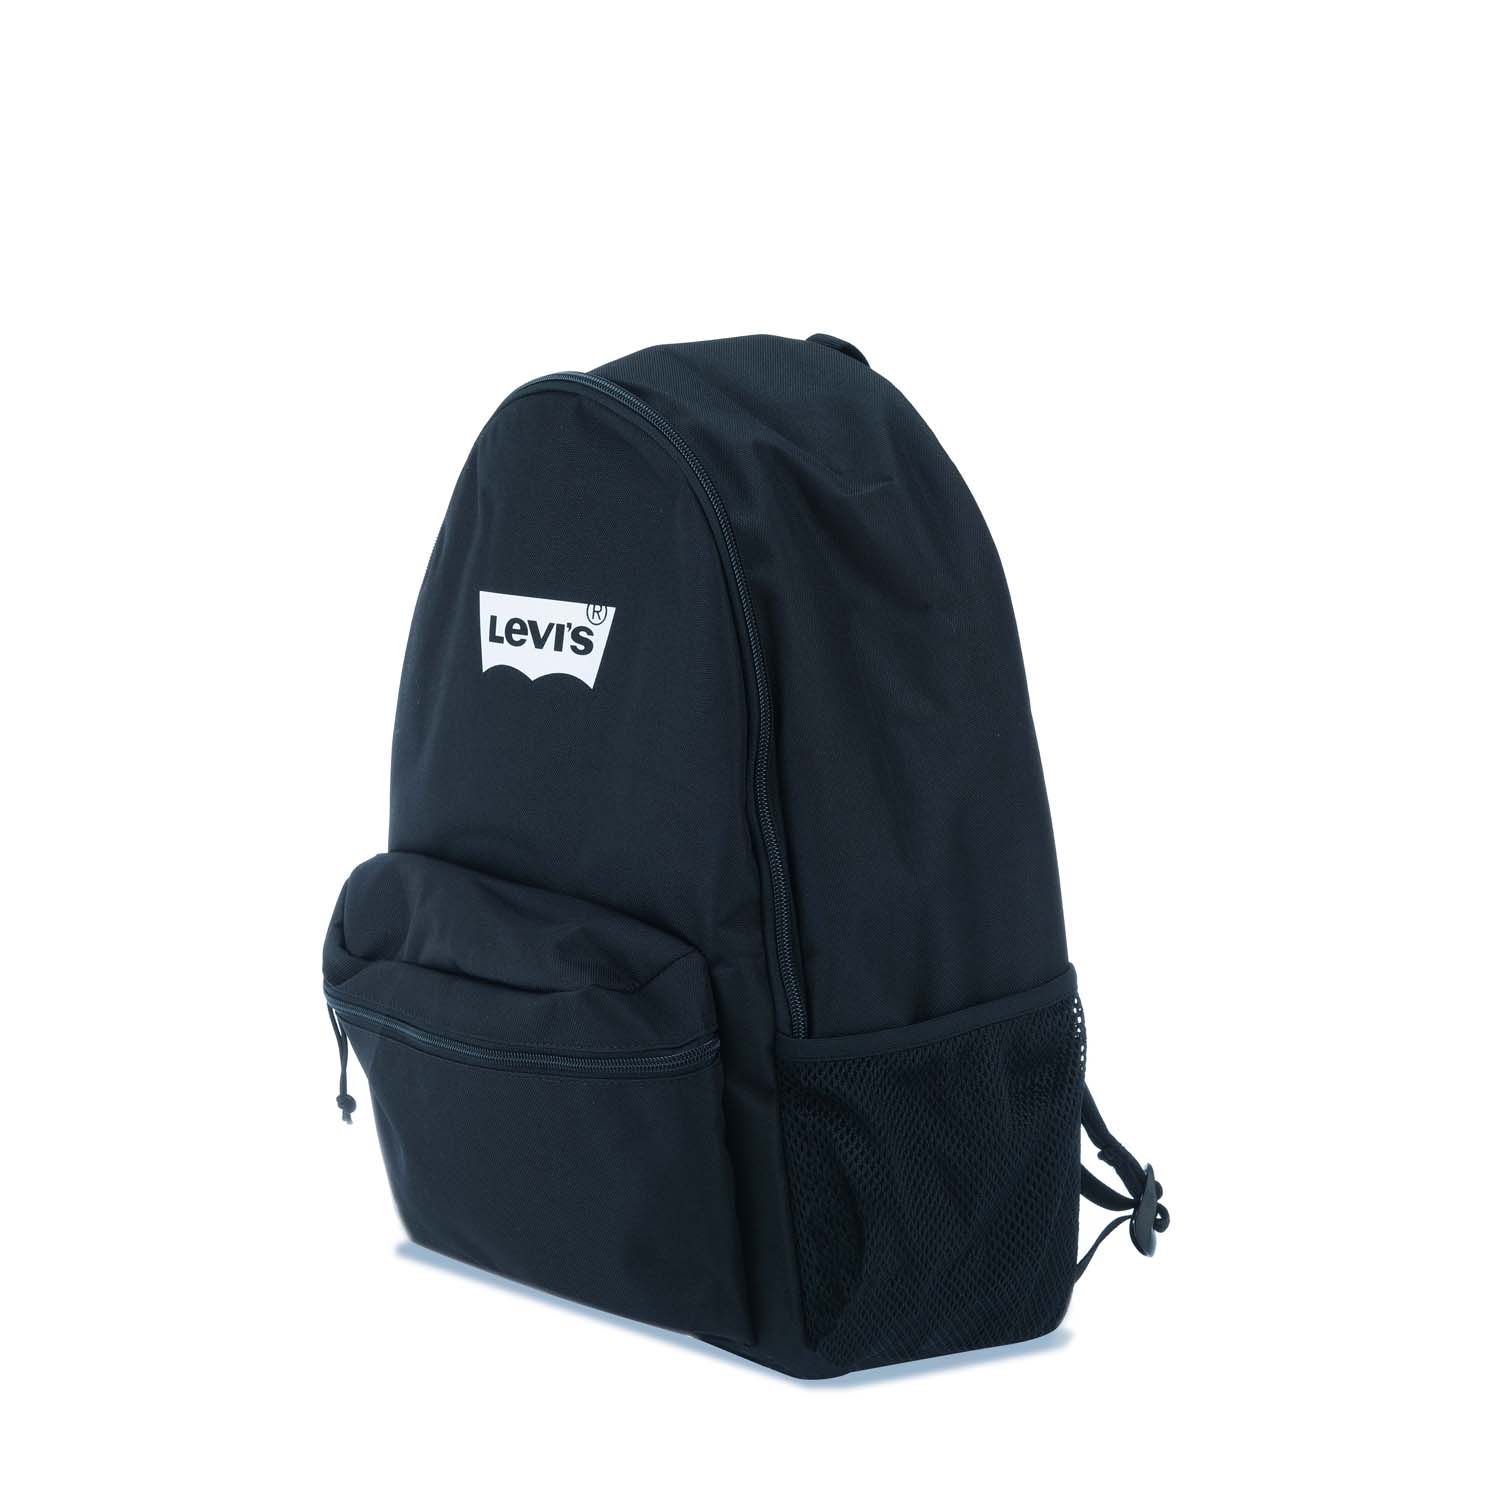 Black Levis Basic Backpack - Get The Label